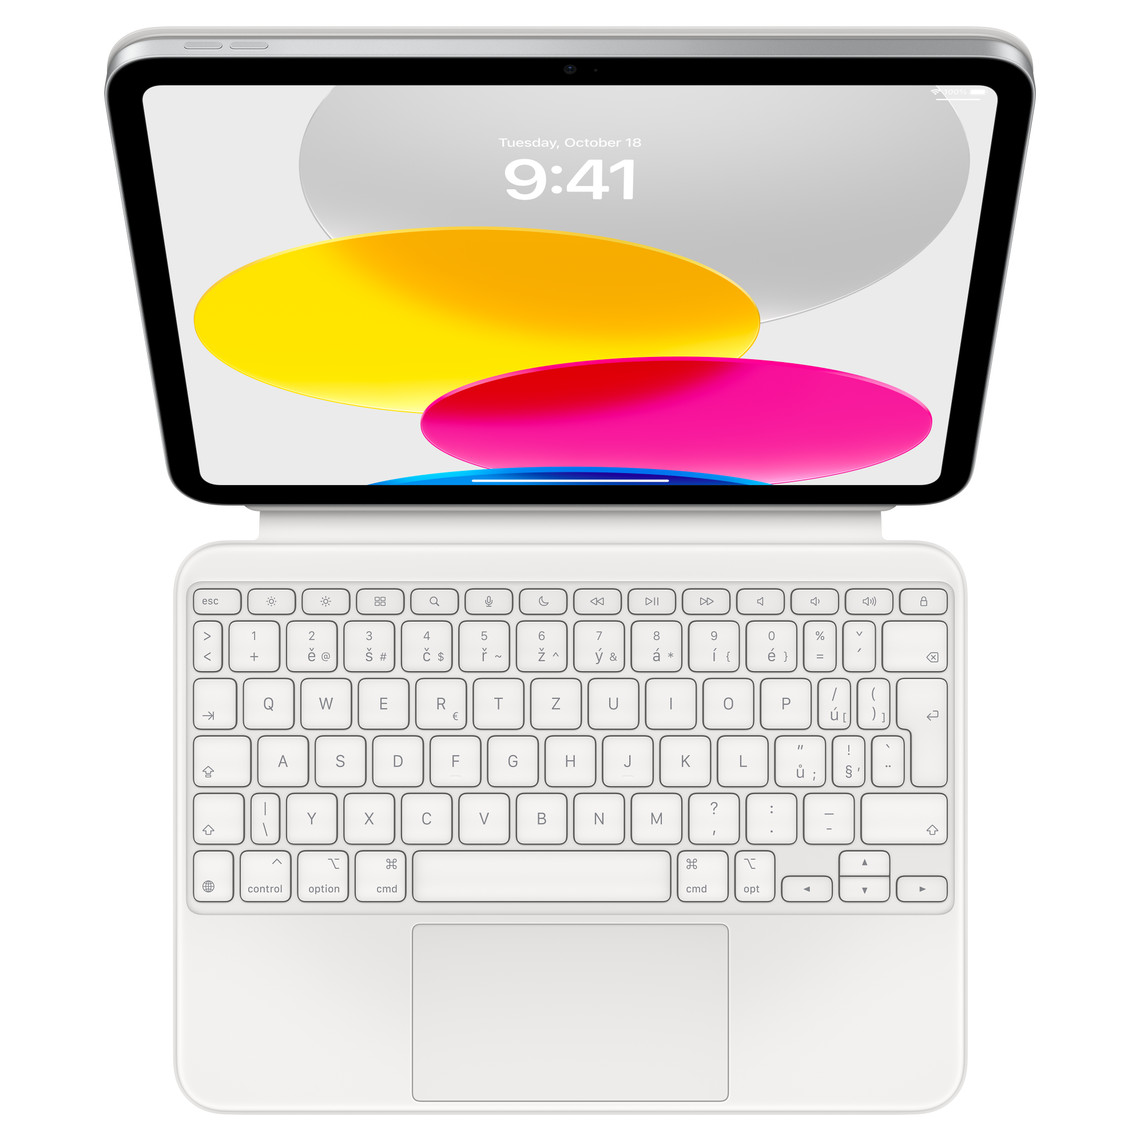 Pohled shora na iPad s připojeným Magic Keyboard Foliem ve vodorovné poloze. Display zobrazující barevnou grafiku tvořenou kruhy.